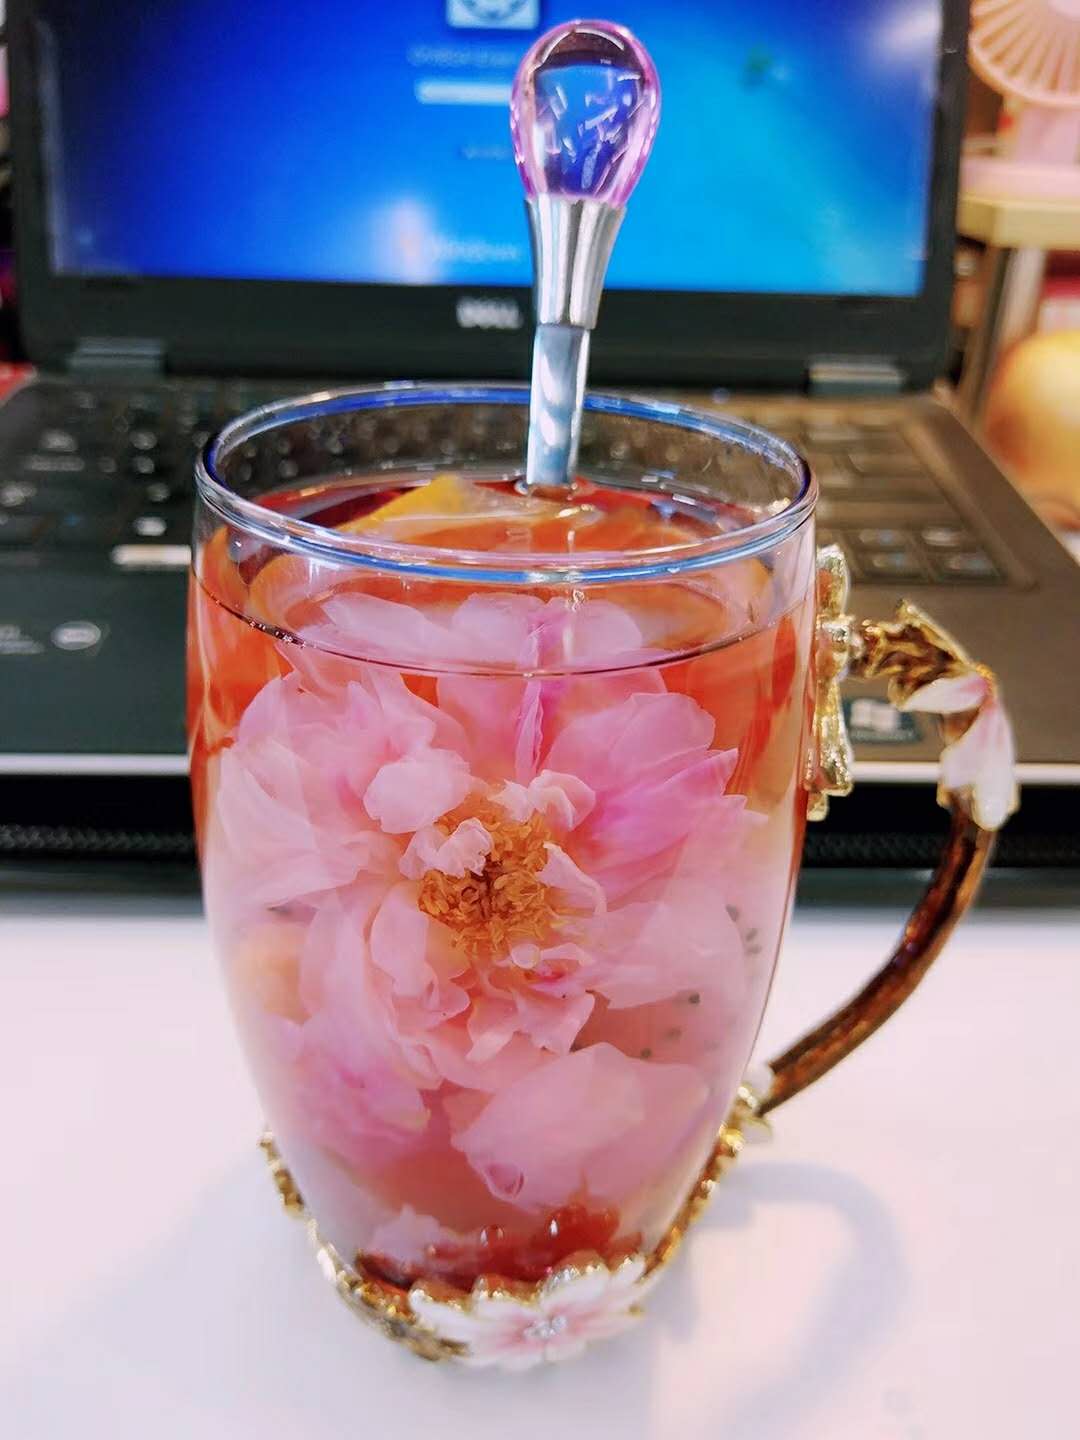 玫瑰花茶